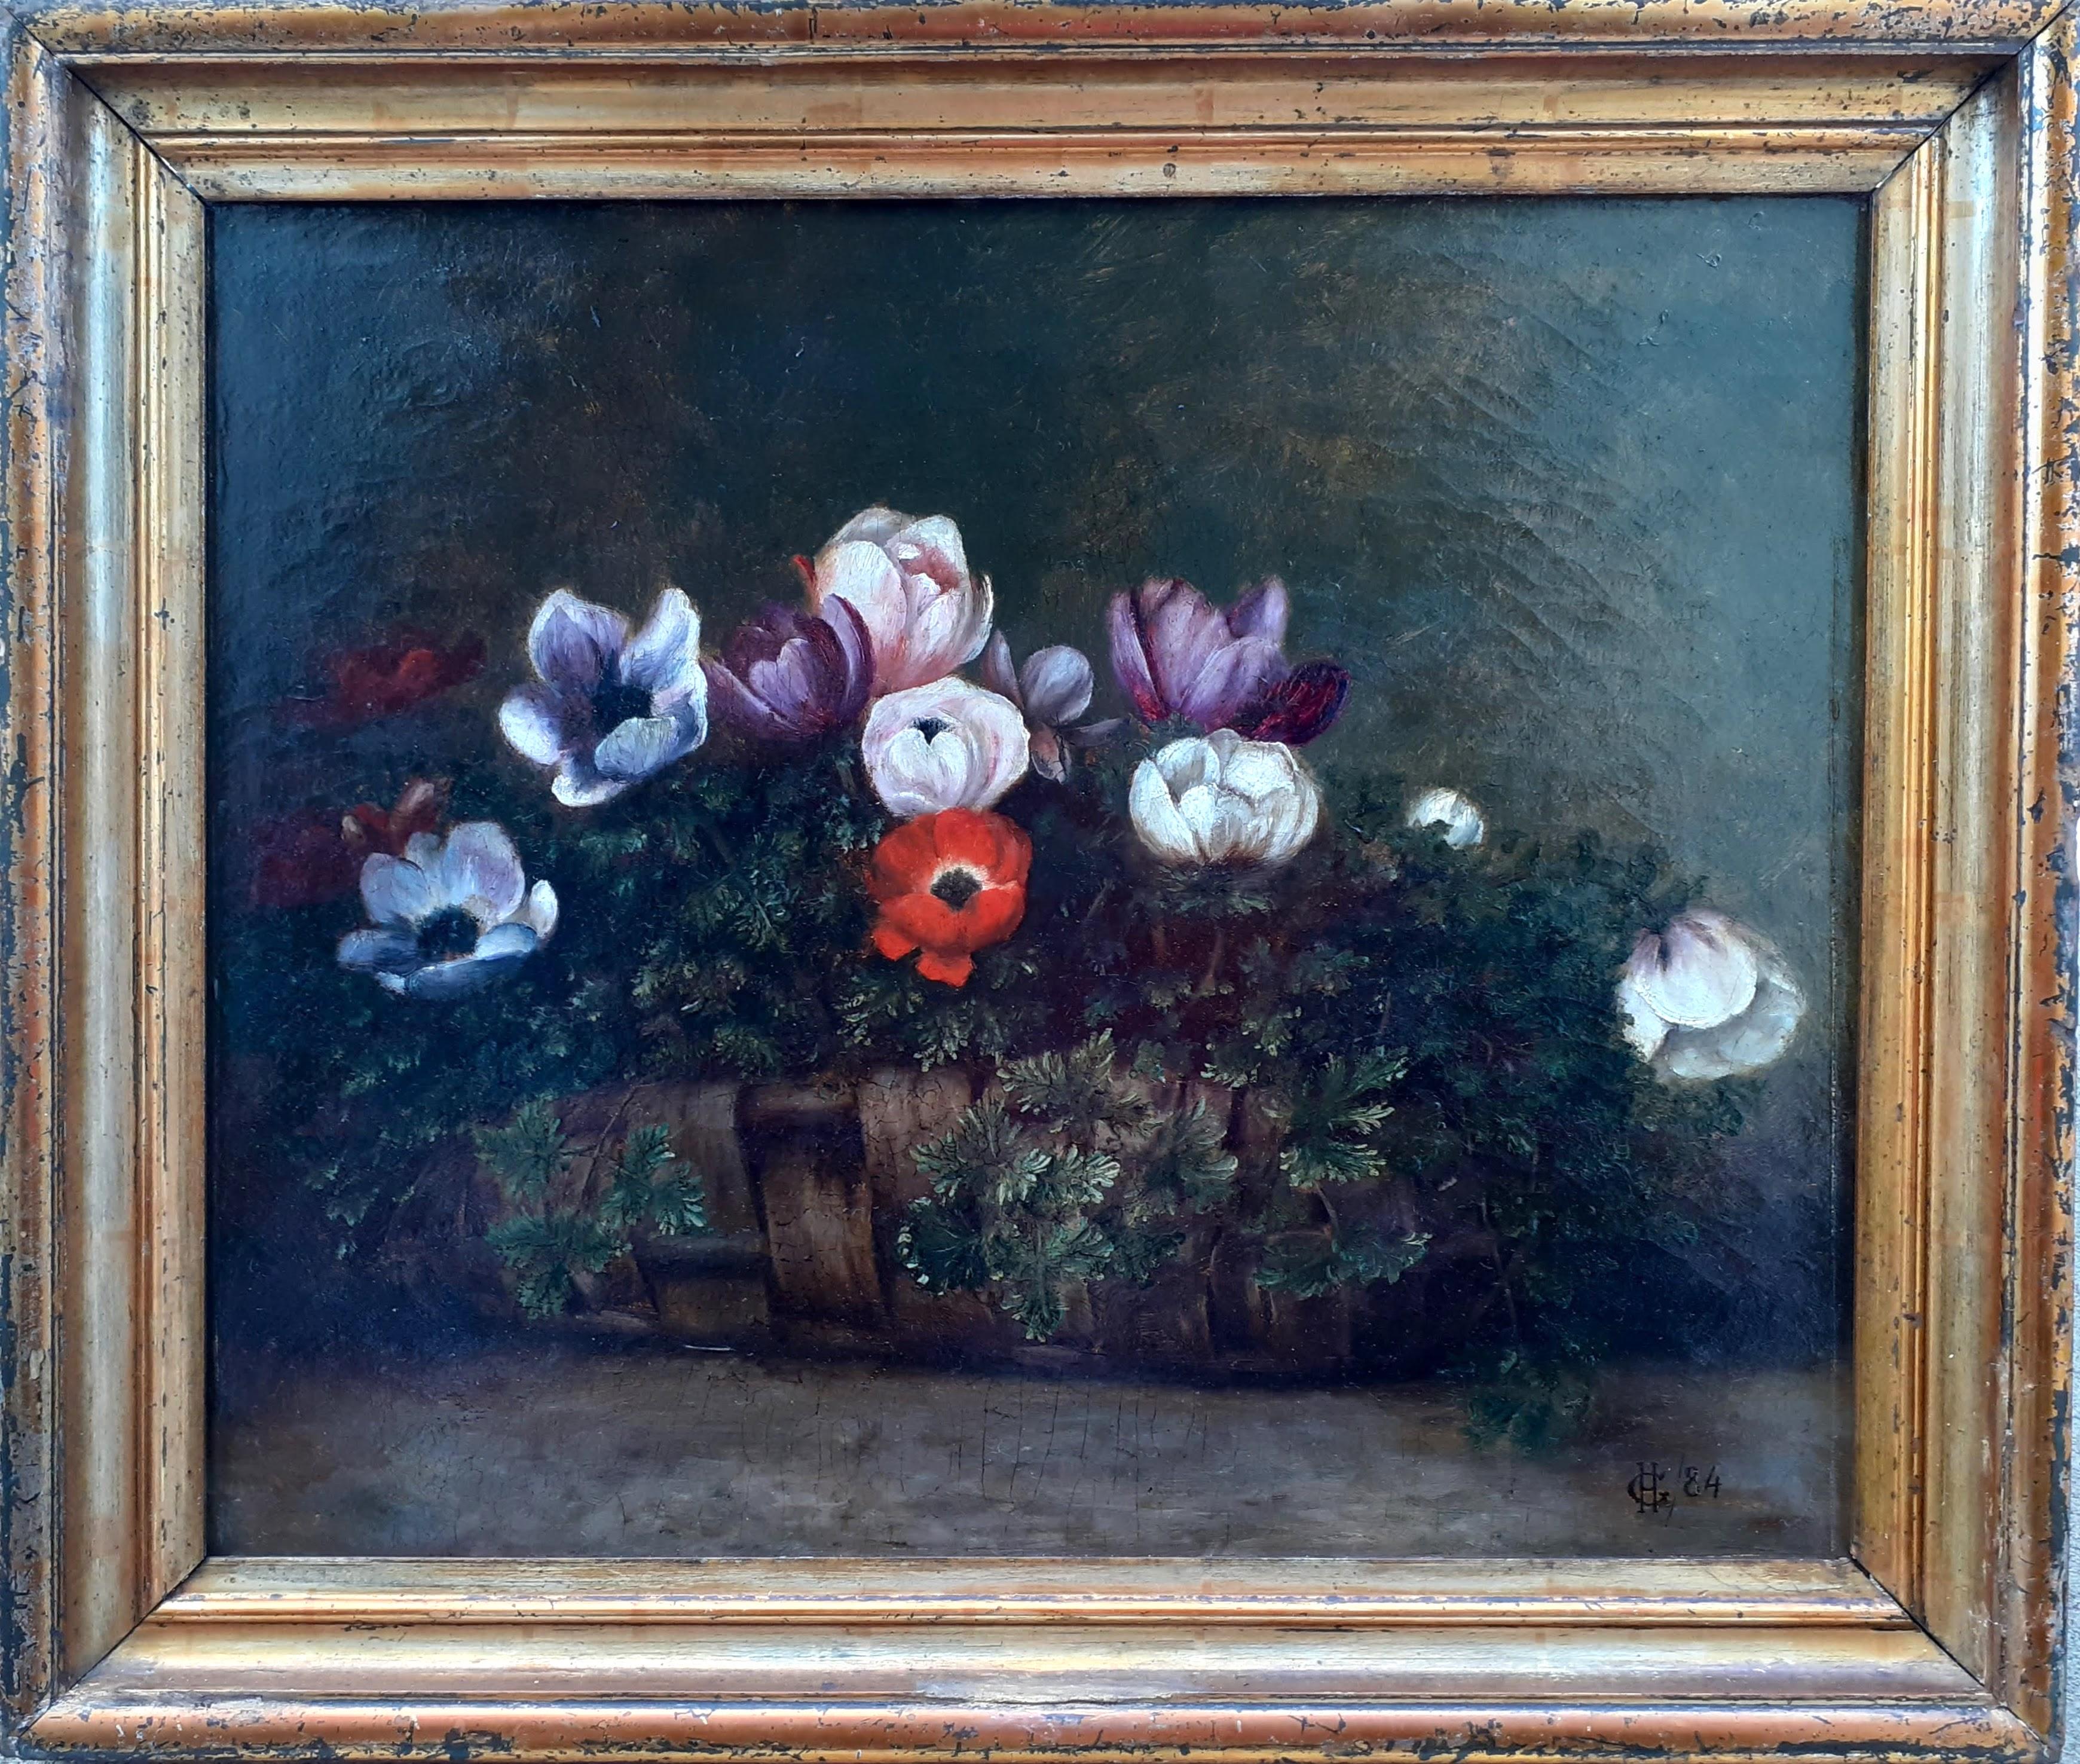 Figurative Painting Unknown - Corbeille en osier avec motifs anciens, cadeau de fête modeste, nature morte florale du 19ème siècle